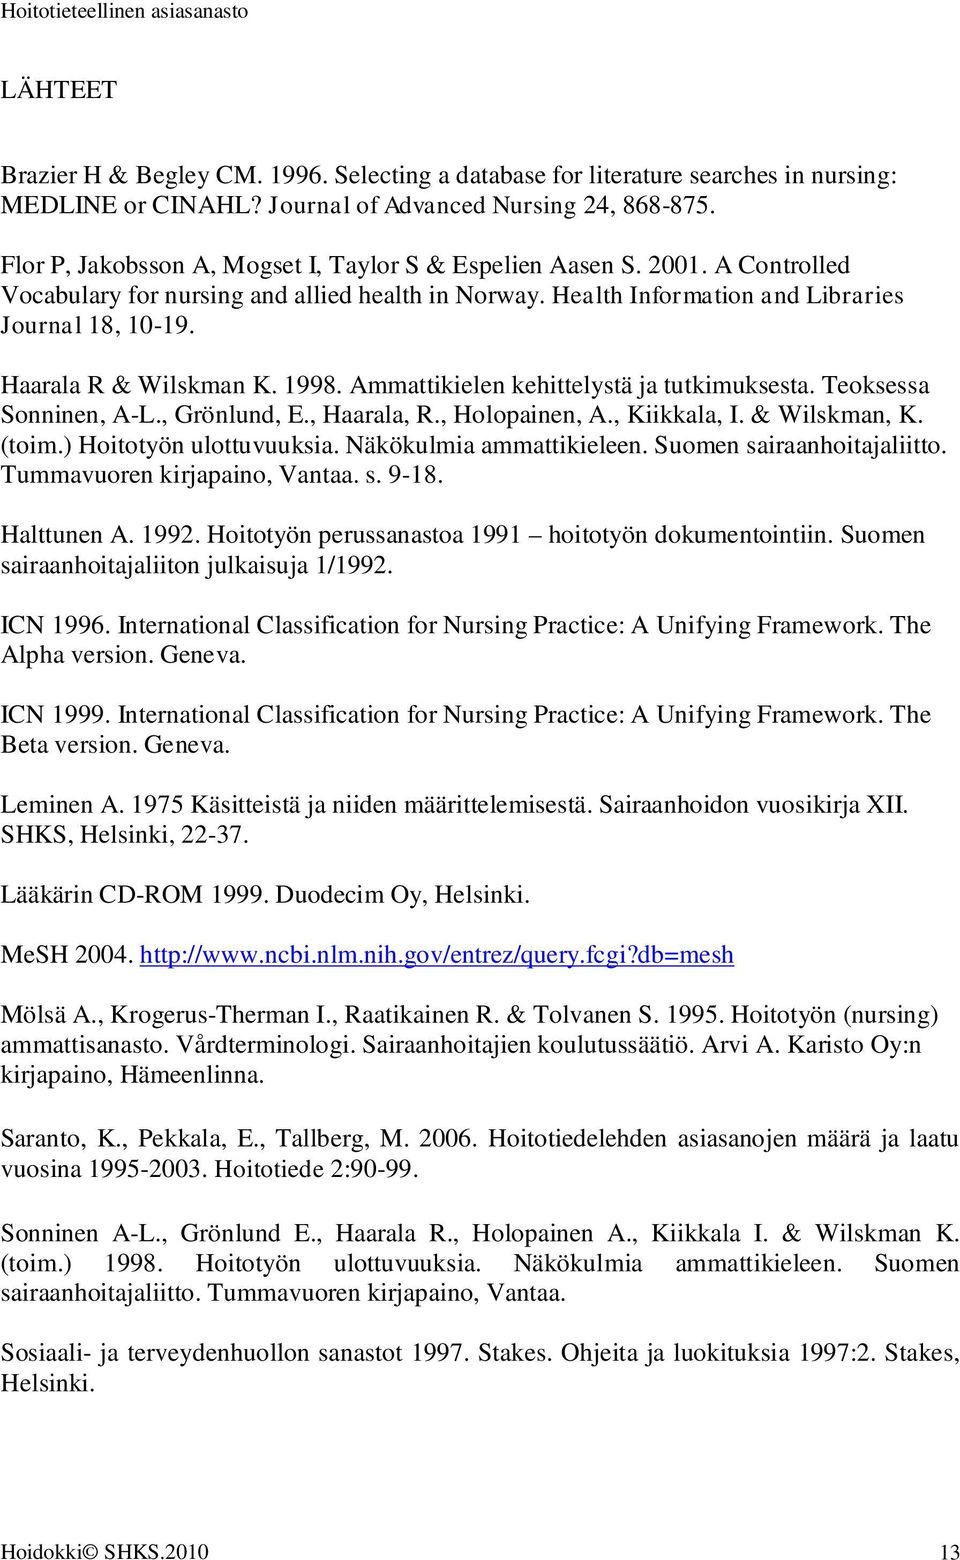 Haarala R & Wilskman K. 1998. Ammattikielen kehittelystä ja tutkimuksesta. Teoksessa Sonninen, A-L., Grönlund, E., Haarala, R., Holopainen, A., Kiikkala, I. & Wilskman, K. (toim.